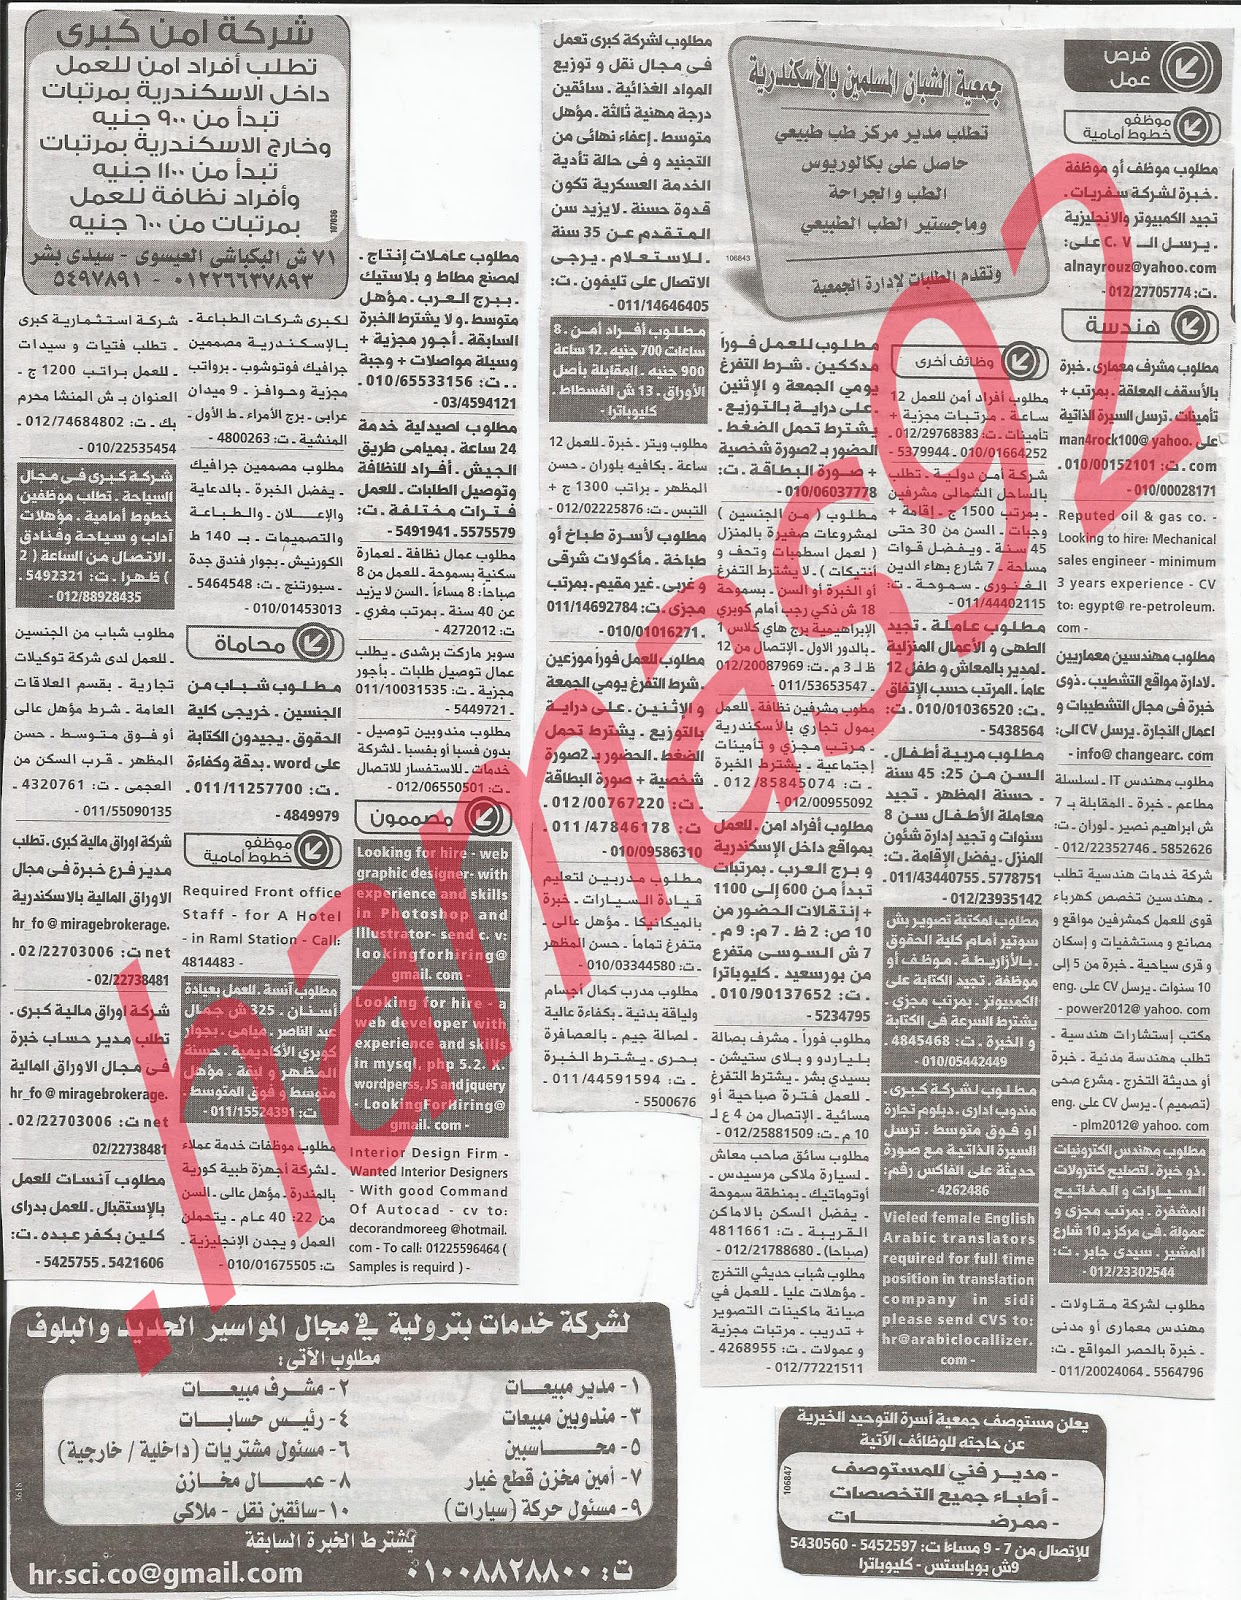 وظائف خالية من جريدة الوسيط الاسكندرية الثلاثاء 4/12/2012 - وظائف عديدة %D9%88+%D8%B3+%D8%B3+1